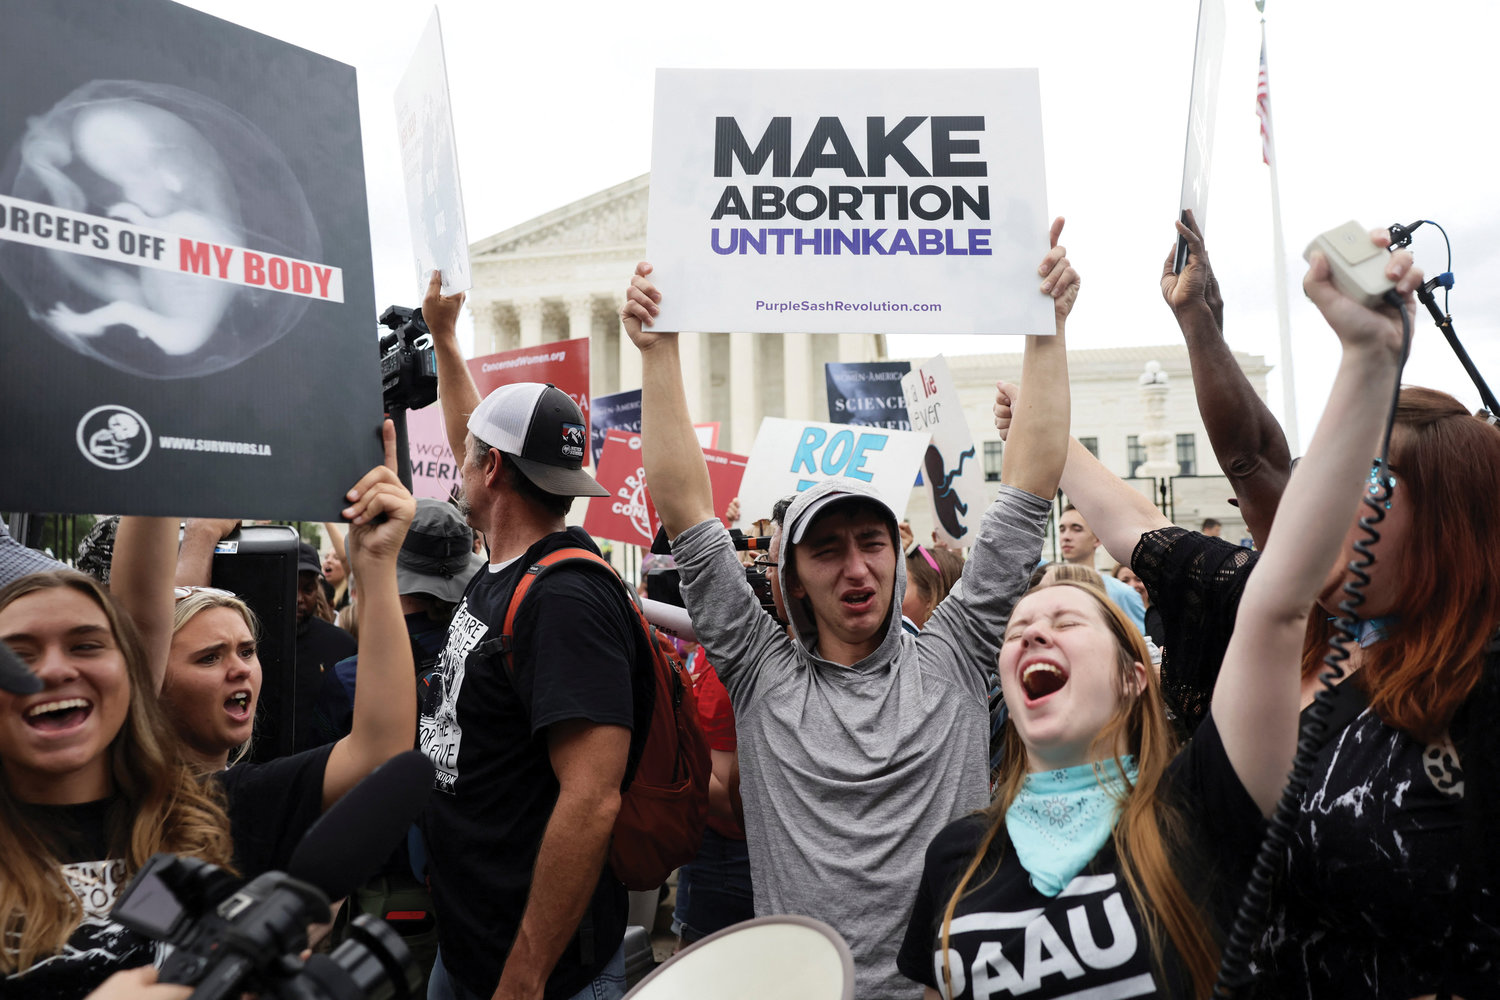 AFIRMANDO LA VIDA—Manifestantes de pro-vida en Washington, D.C. celebran fuera de la Corte Suprema el 24 de junio mientras la corte anuló la decisión histórica Roe v. Wade sobre el aborto.